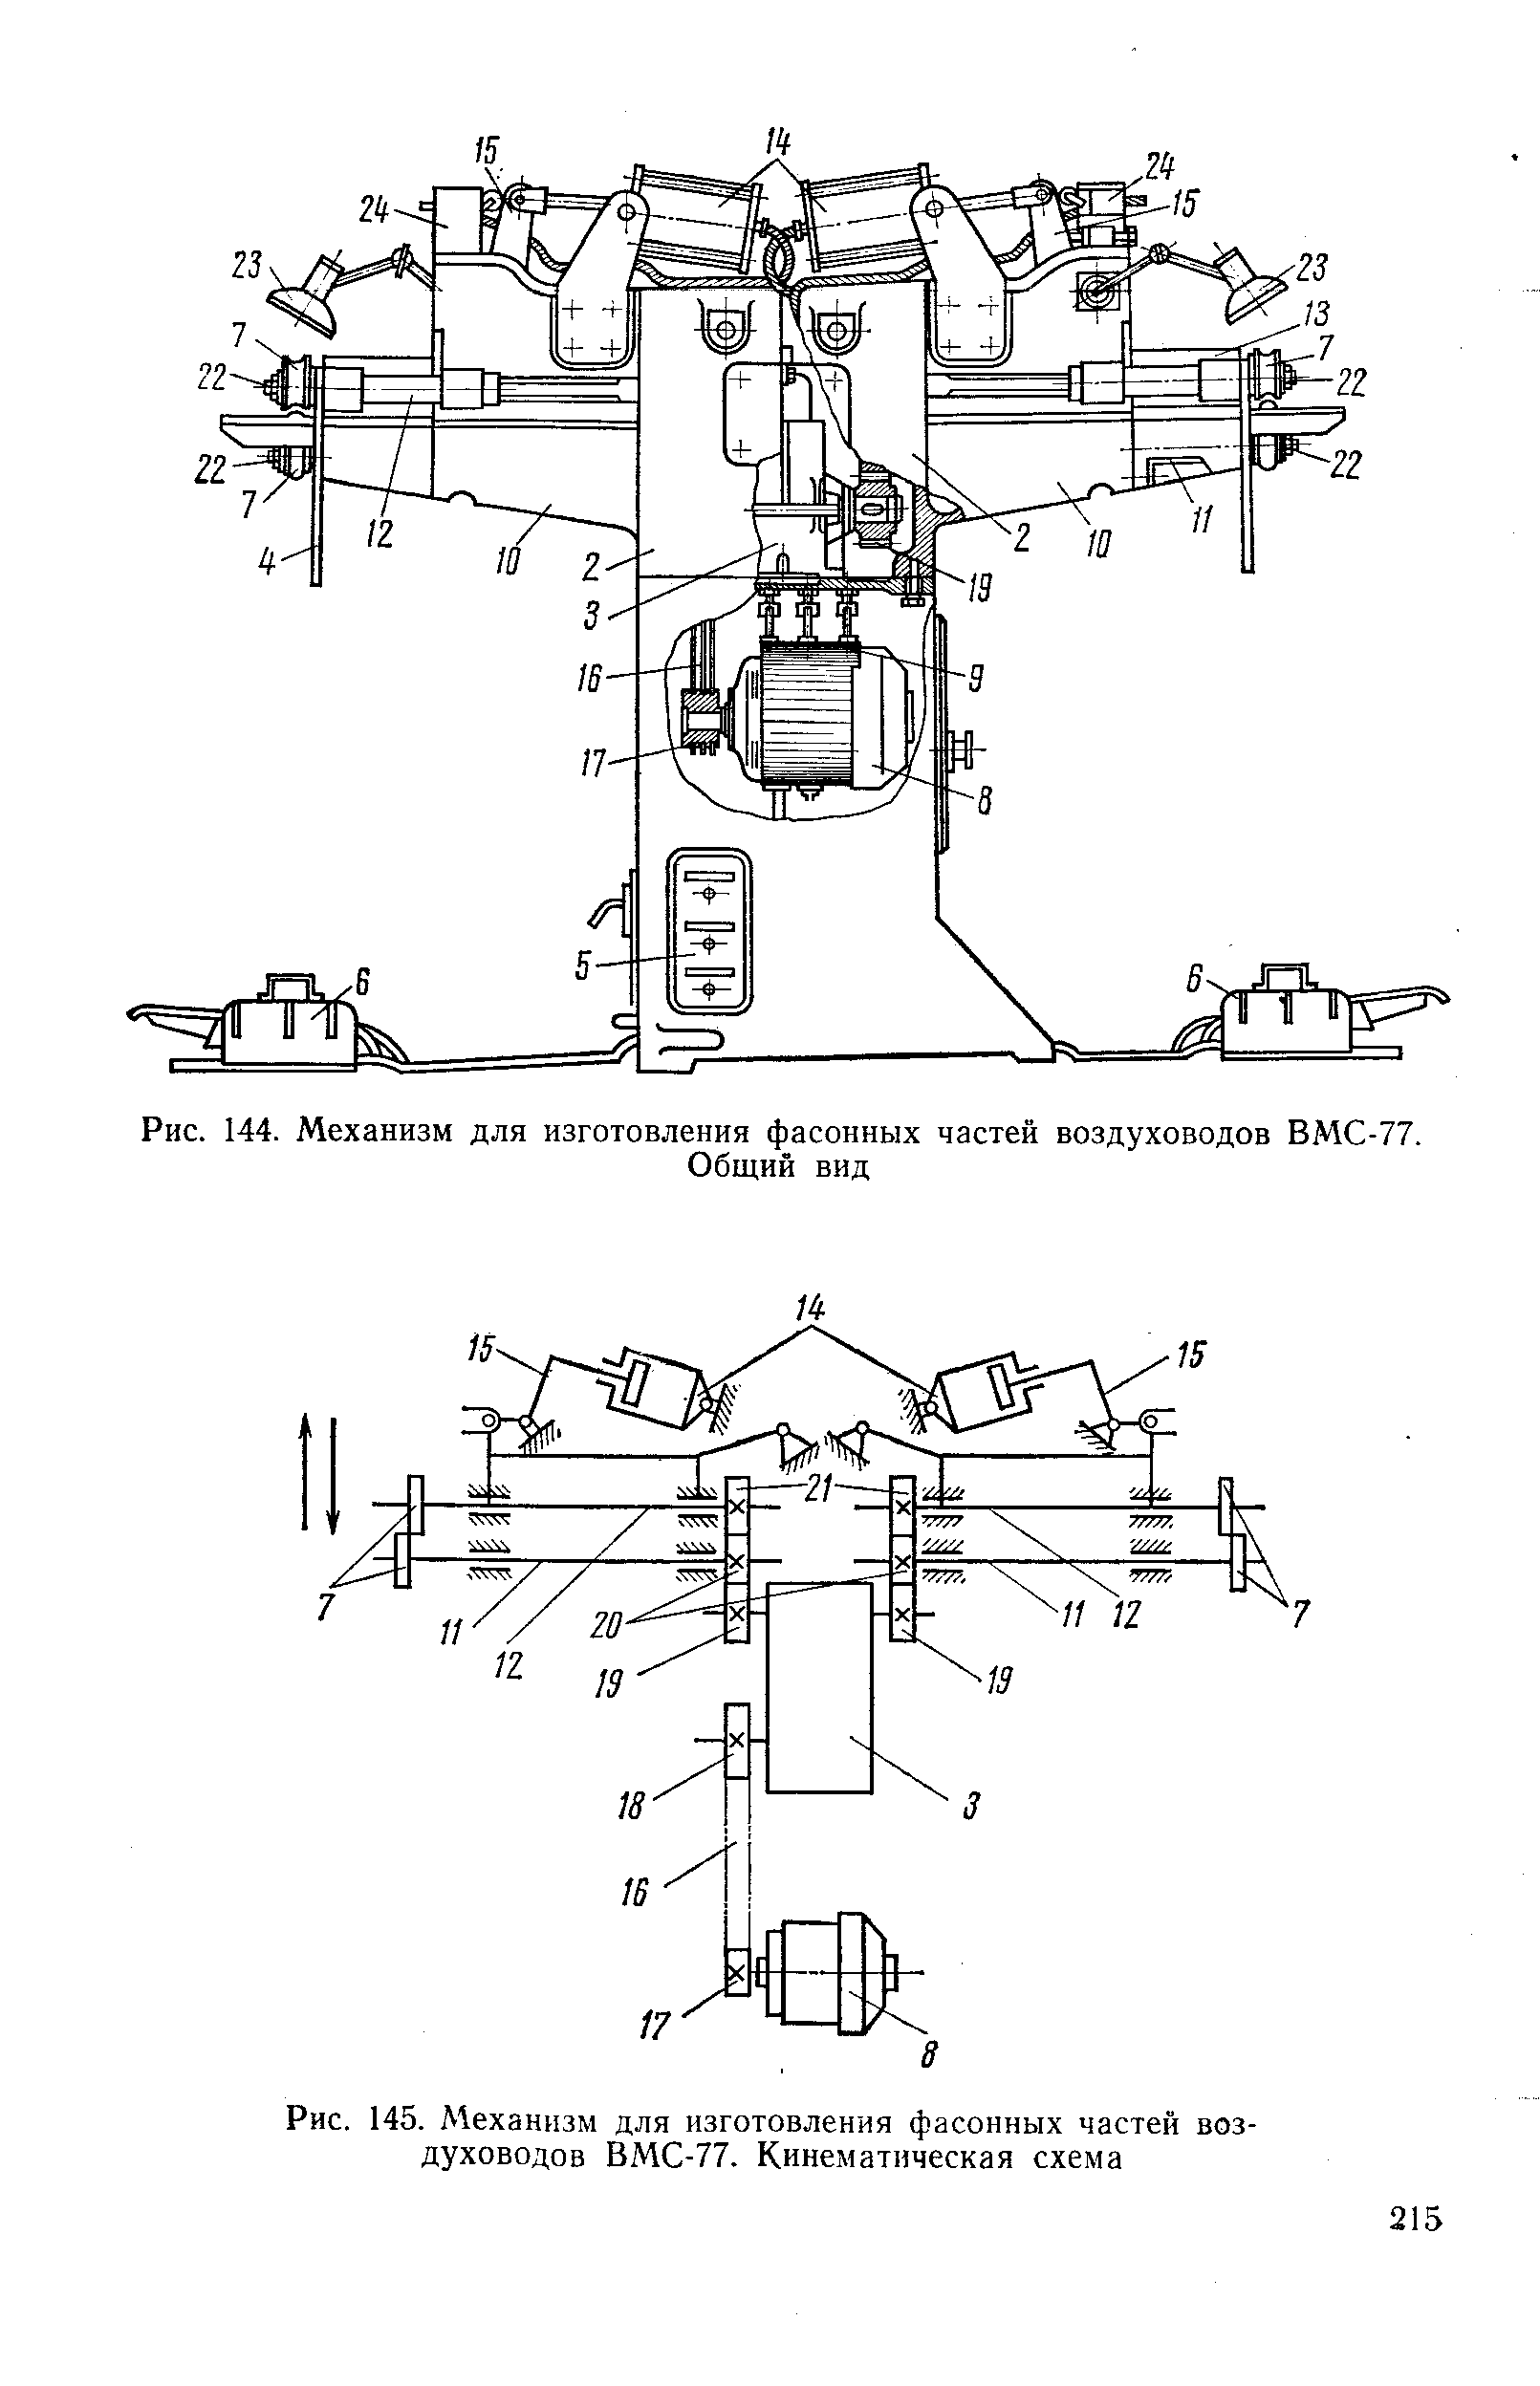 Рис. 145. Механизм для изготовления фасонных частей воздуховодов ВМС-77. Кинематическая схема
